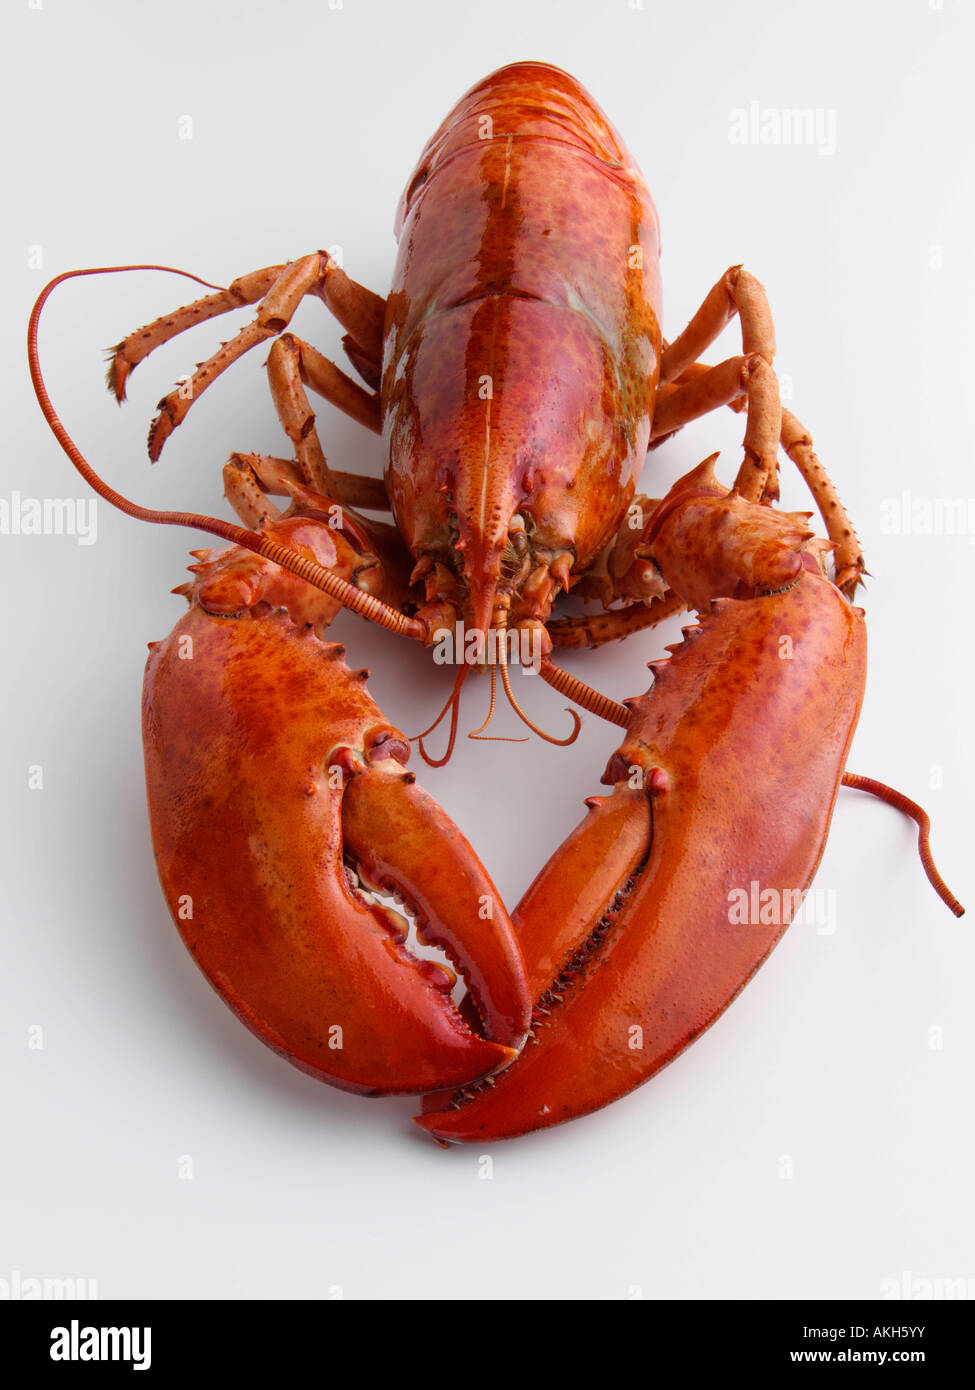 Einen ganzen gekochten Hummer Gourmet Meeresfrüchte redaktionelle Essen  Stockfotografie - Alamy